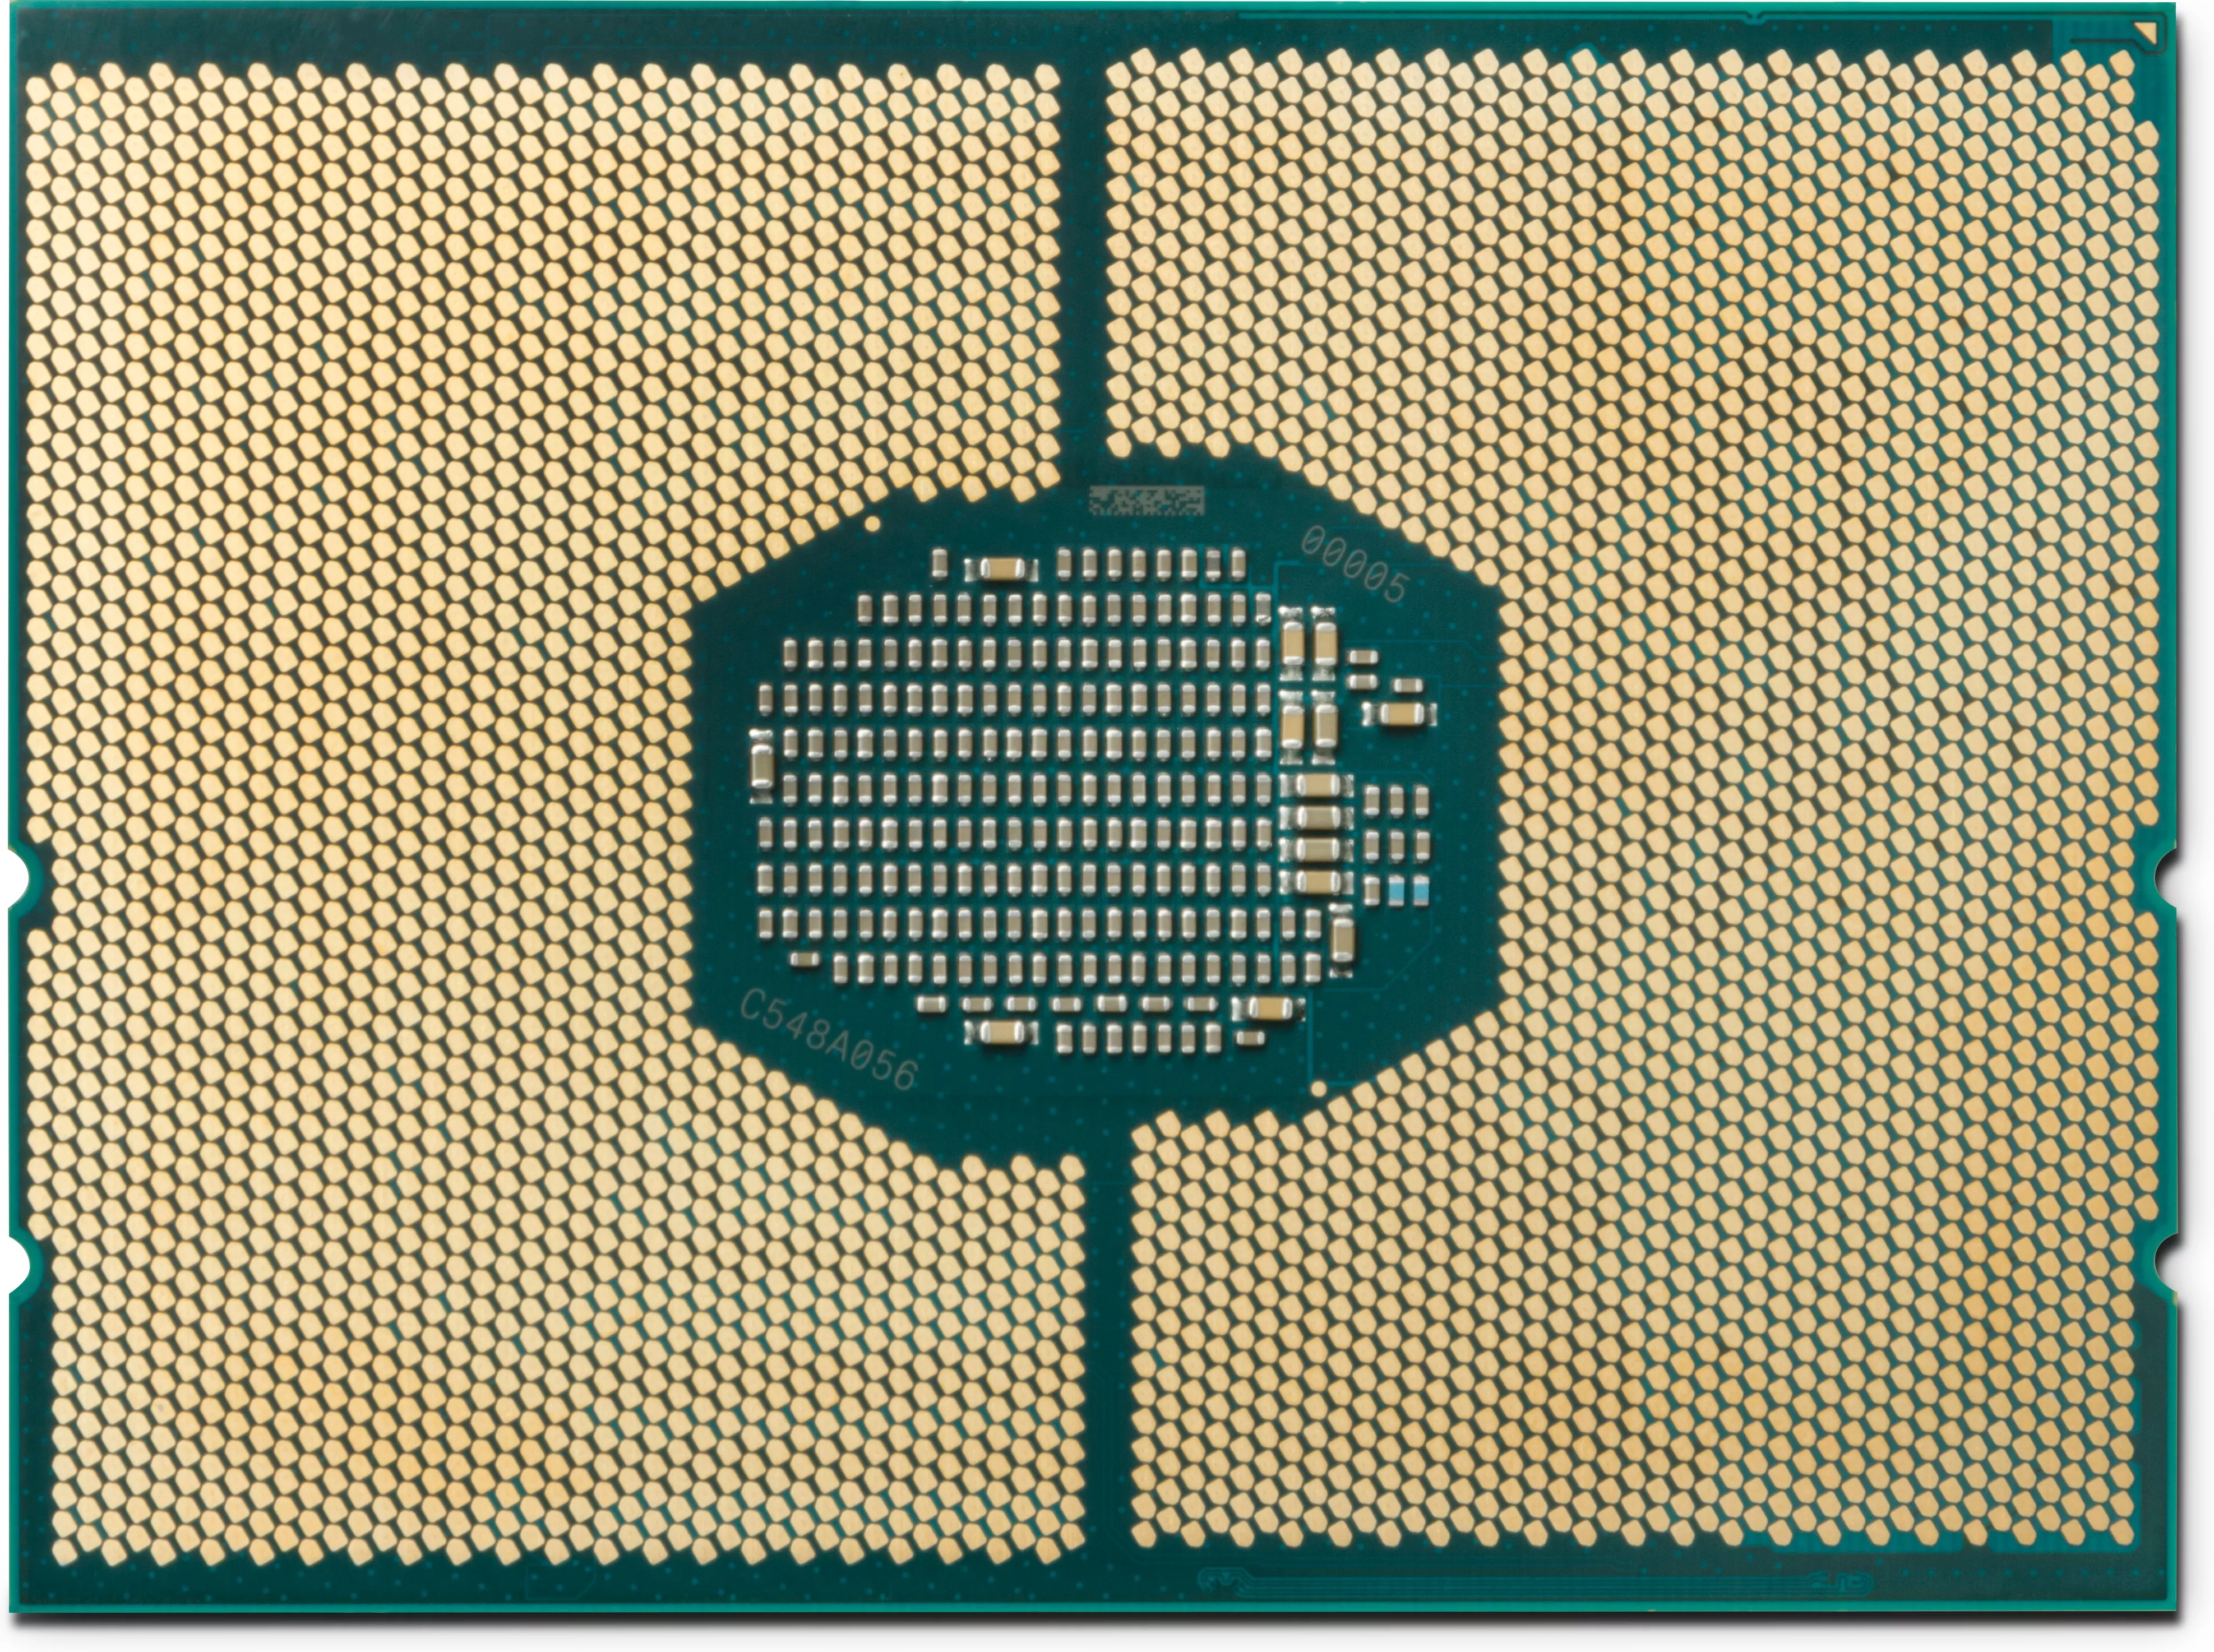 Achat Processeur HP Z8 G4 Xeon 6226R 2.9GHz 2933 16C 150W CPU2